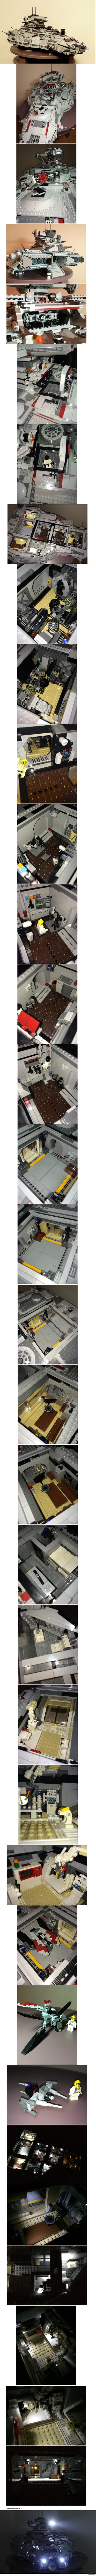    Lego. 9.5  ...    .  6500  ().   ,       ...